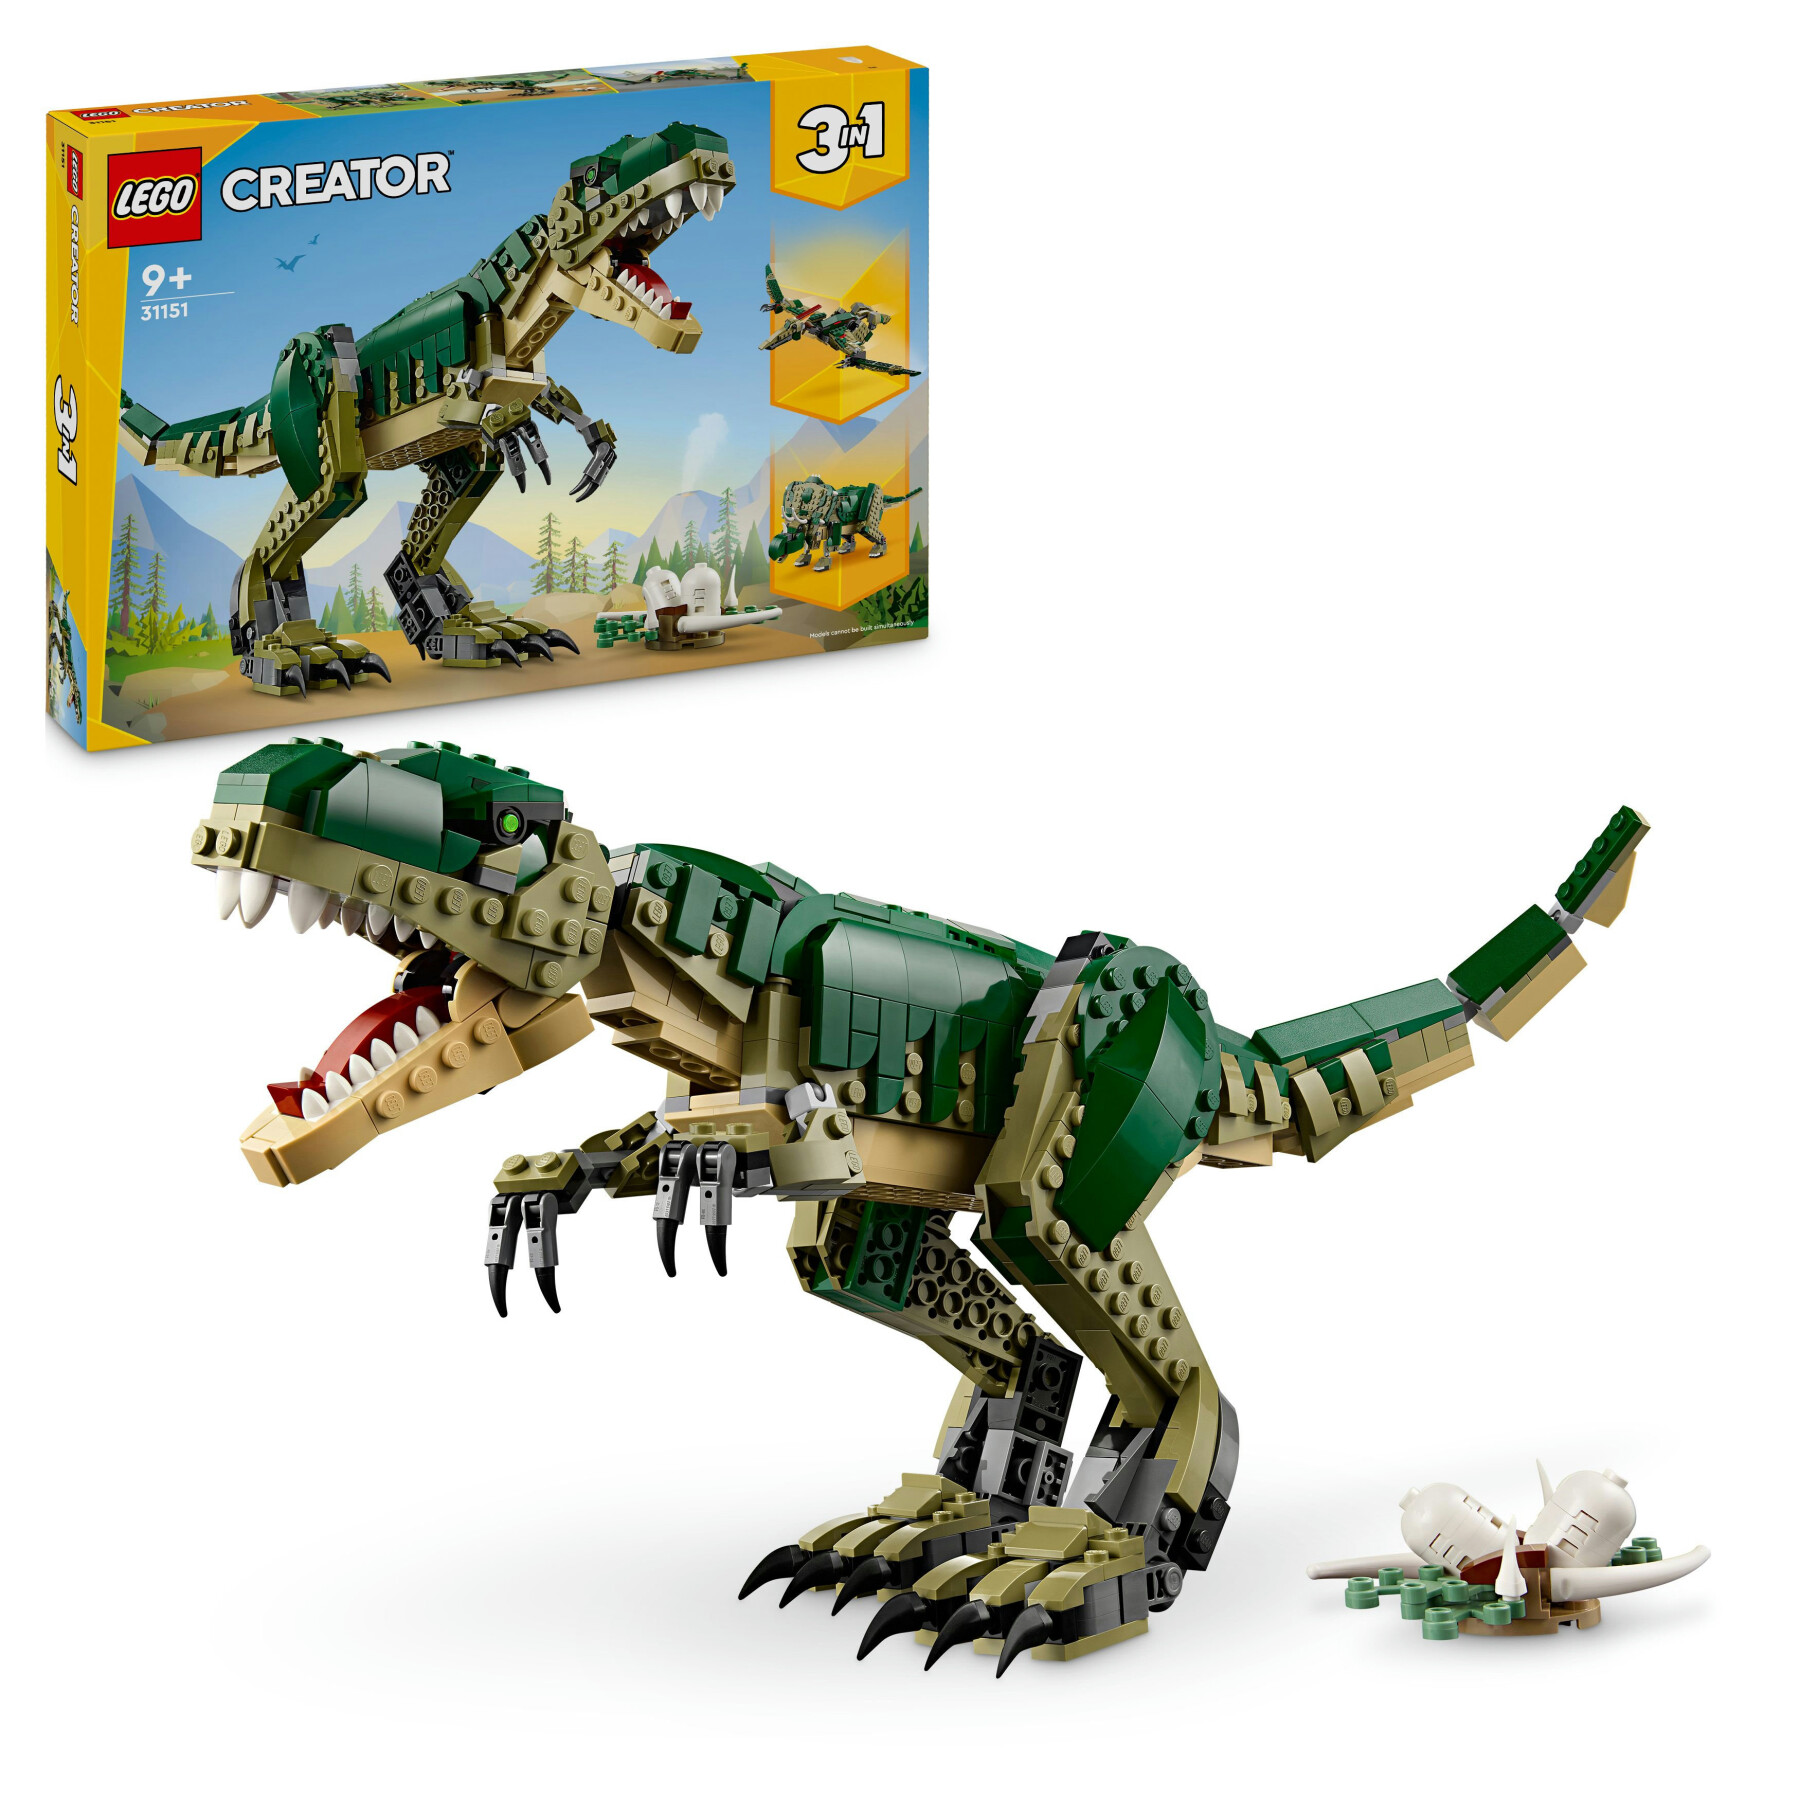 Lego creator 3 in 1 31151 t. rex, dinosauro giocattolo trasformabile in triceratopo e pterodattilo, giochi per bambini 9+ - LEGO CREATOR